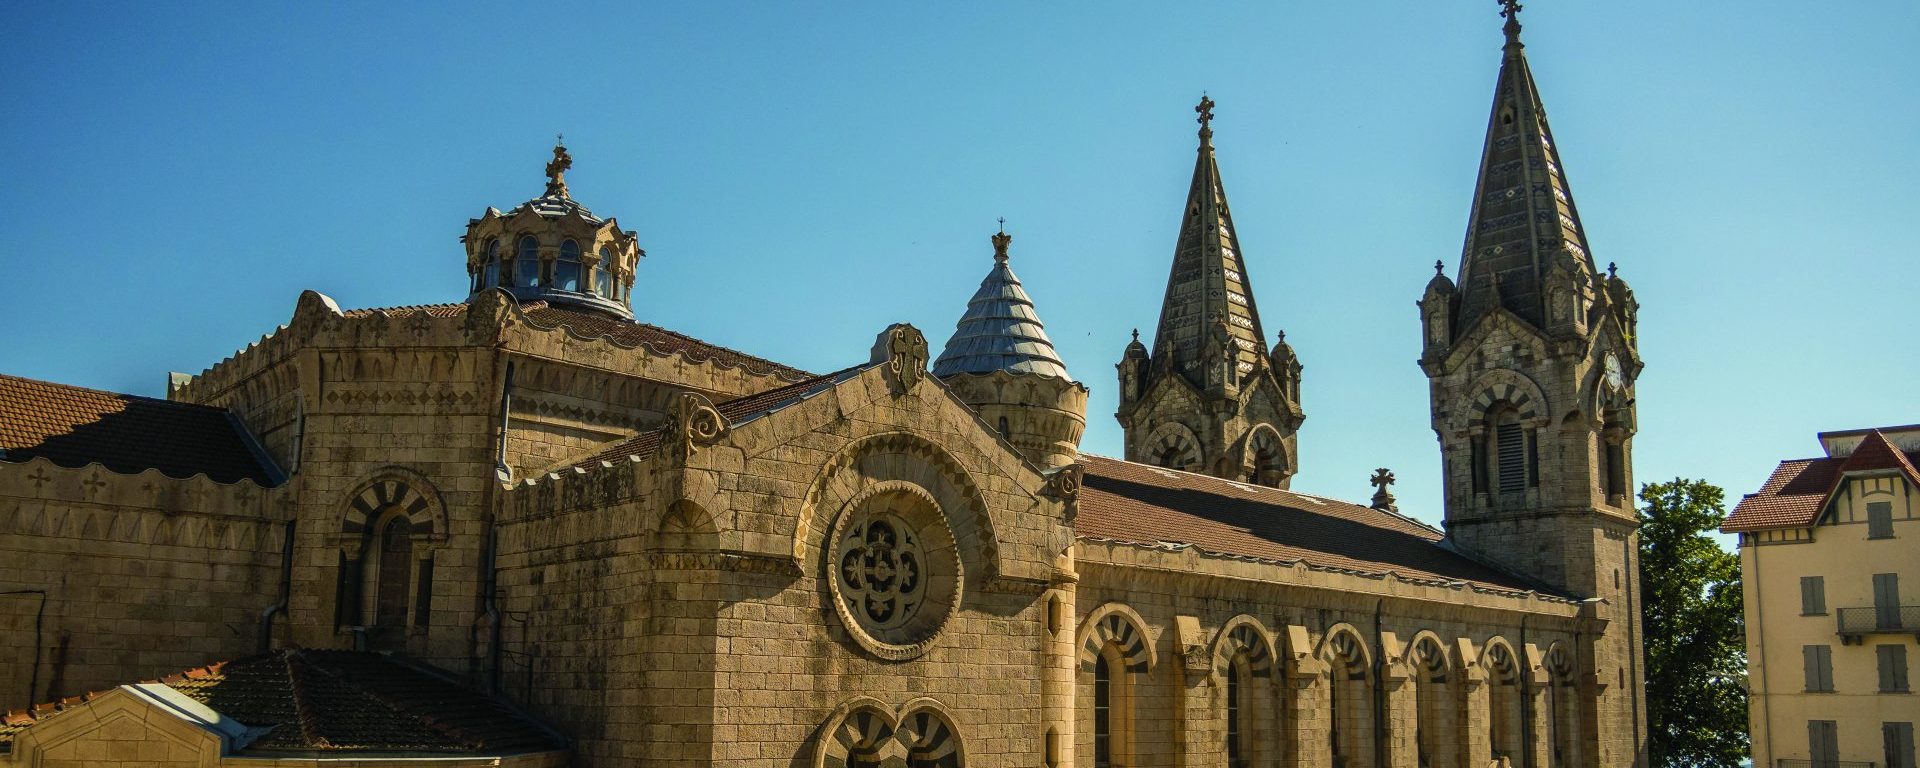 incontournable édifice en Ardèche du Nord, la basilique de Lalouvesc le rendez vous des pèlerinages et des marcheurs